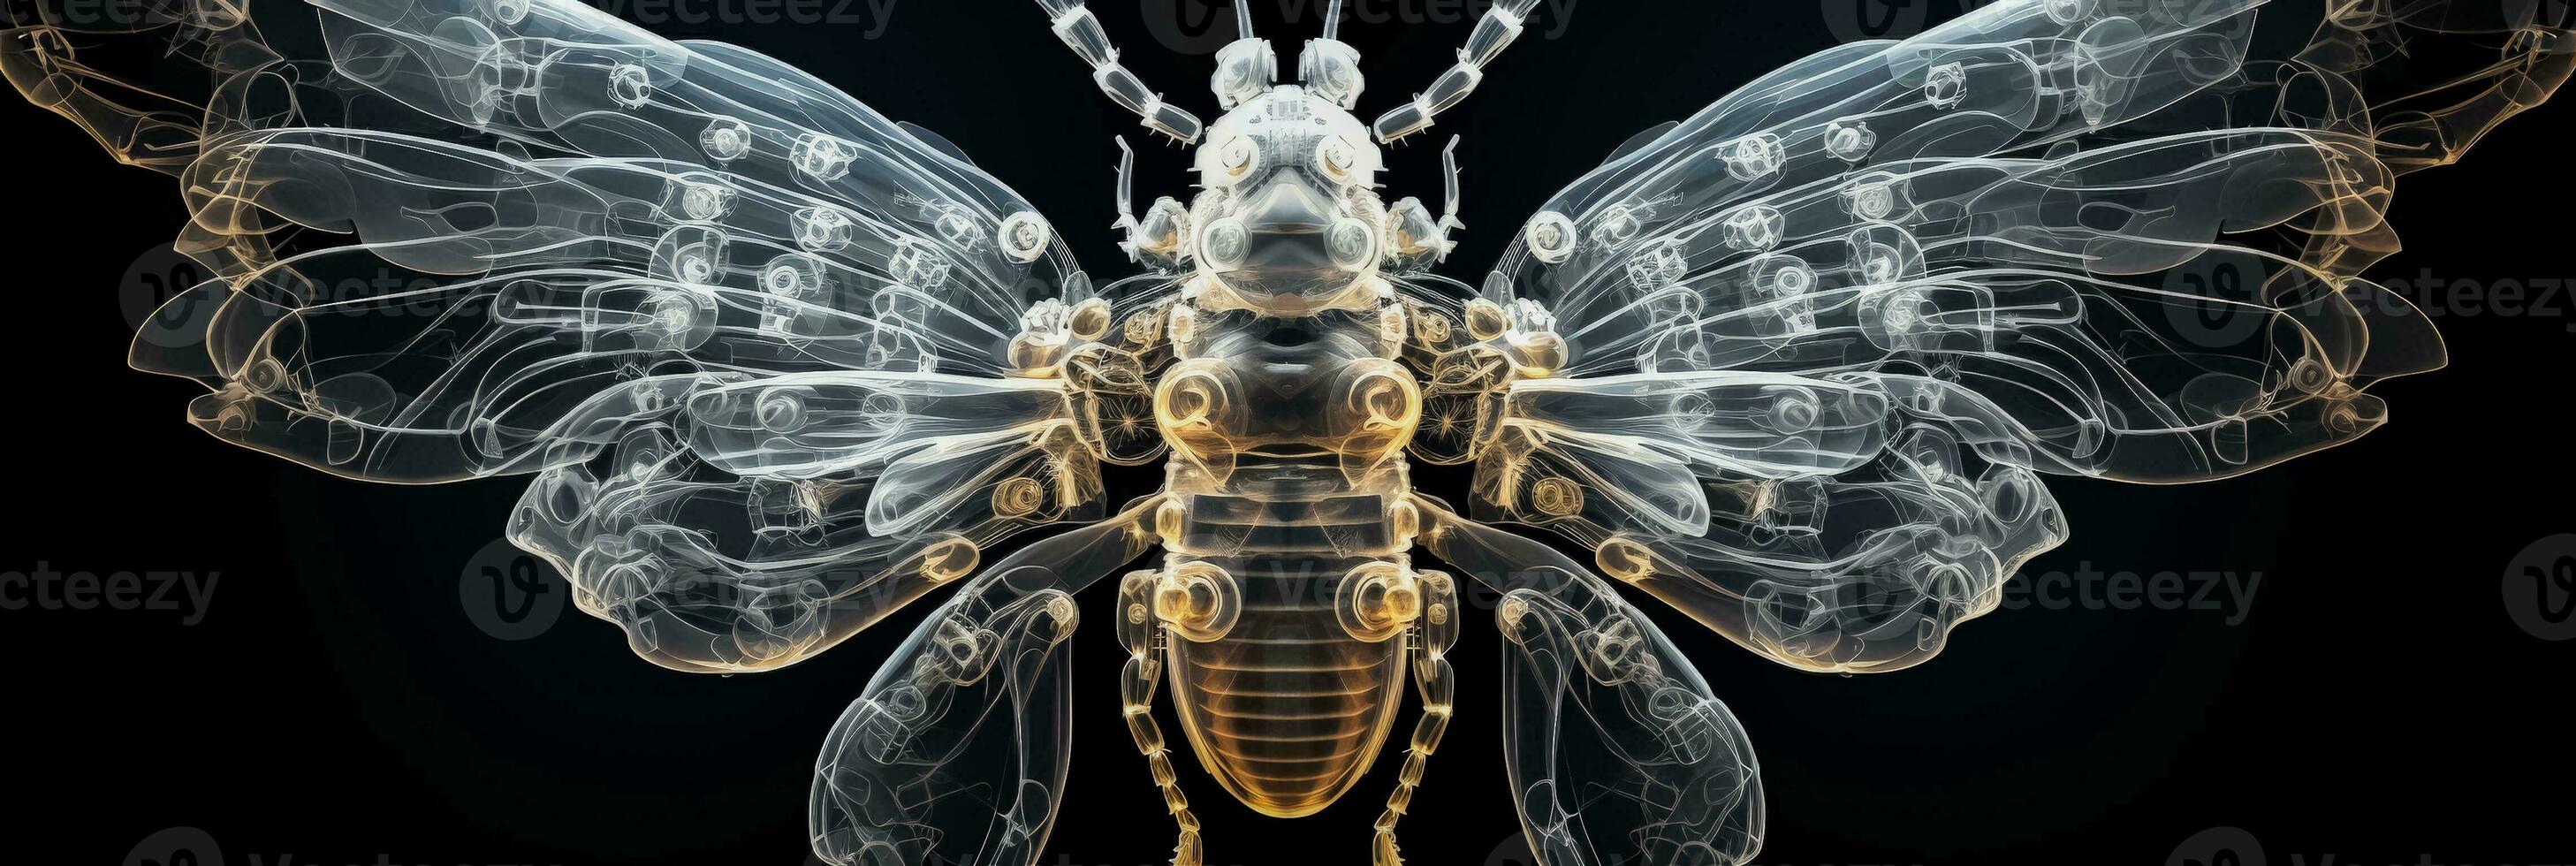 invecklad x stråle bild illustrerar en honungsbin bröstkorg och vinge gemensam strukturera foto